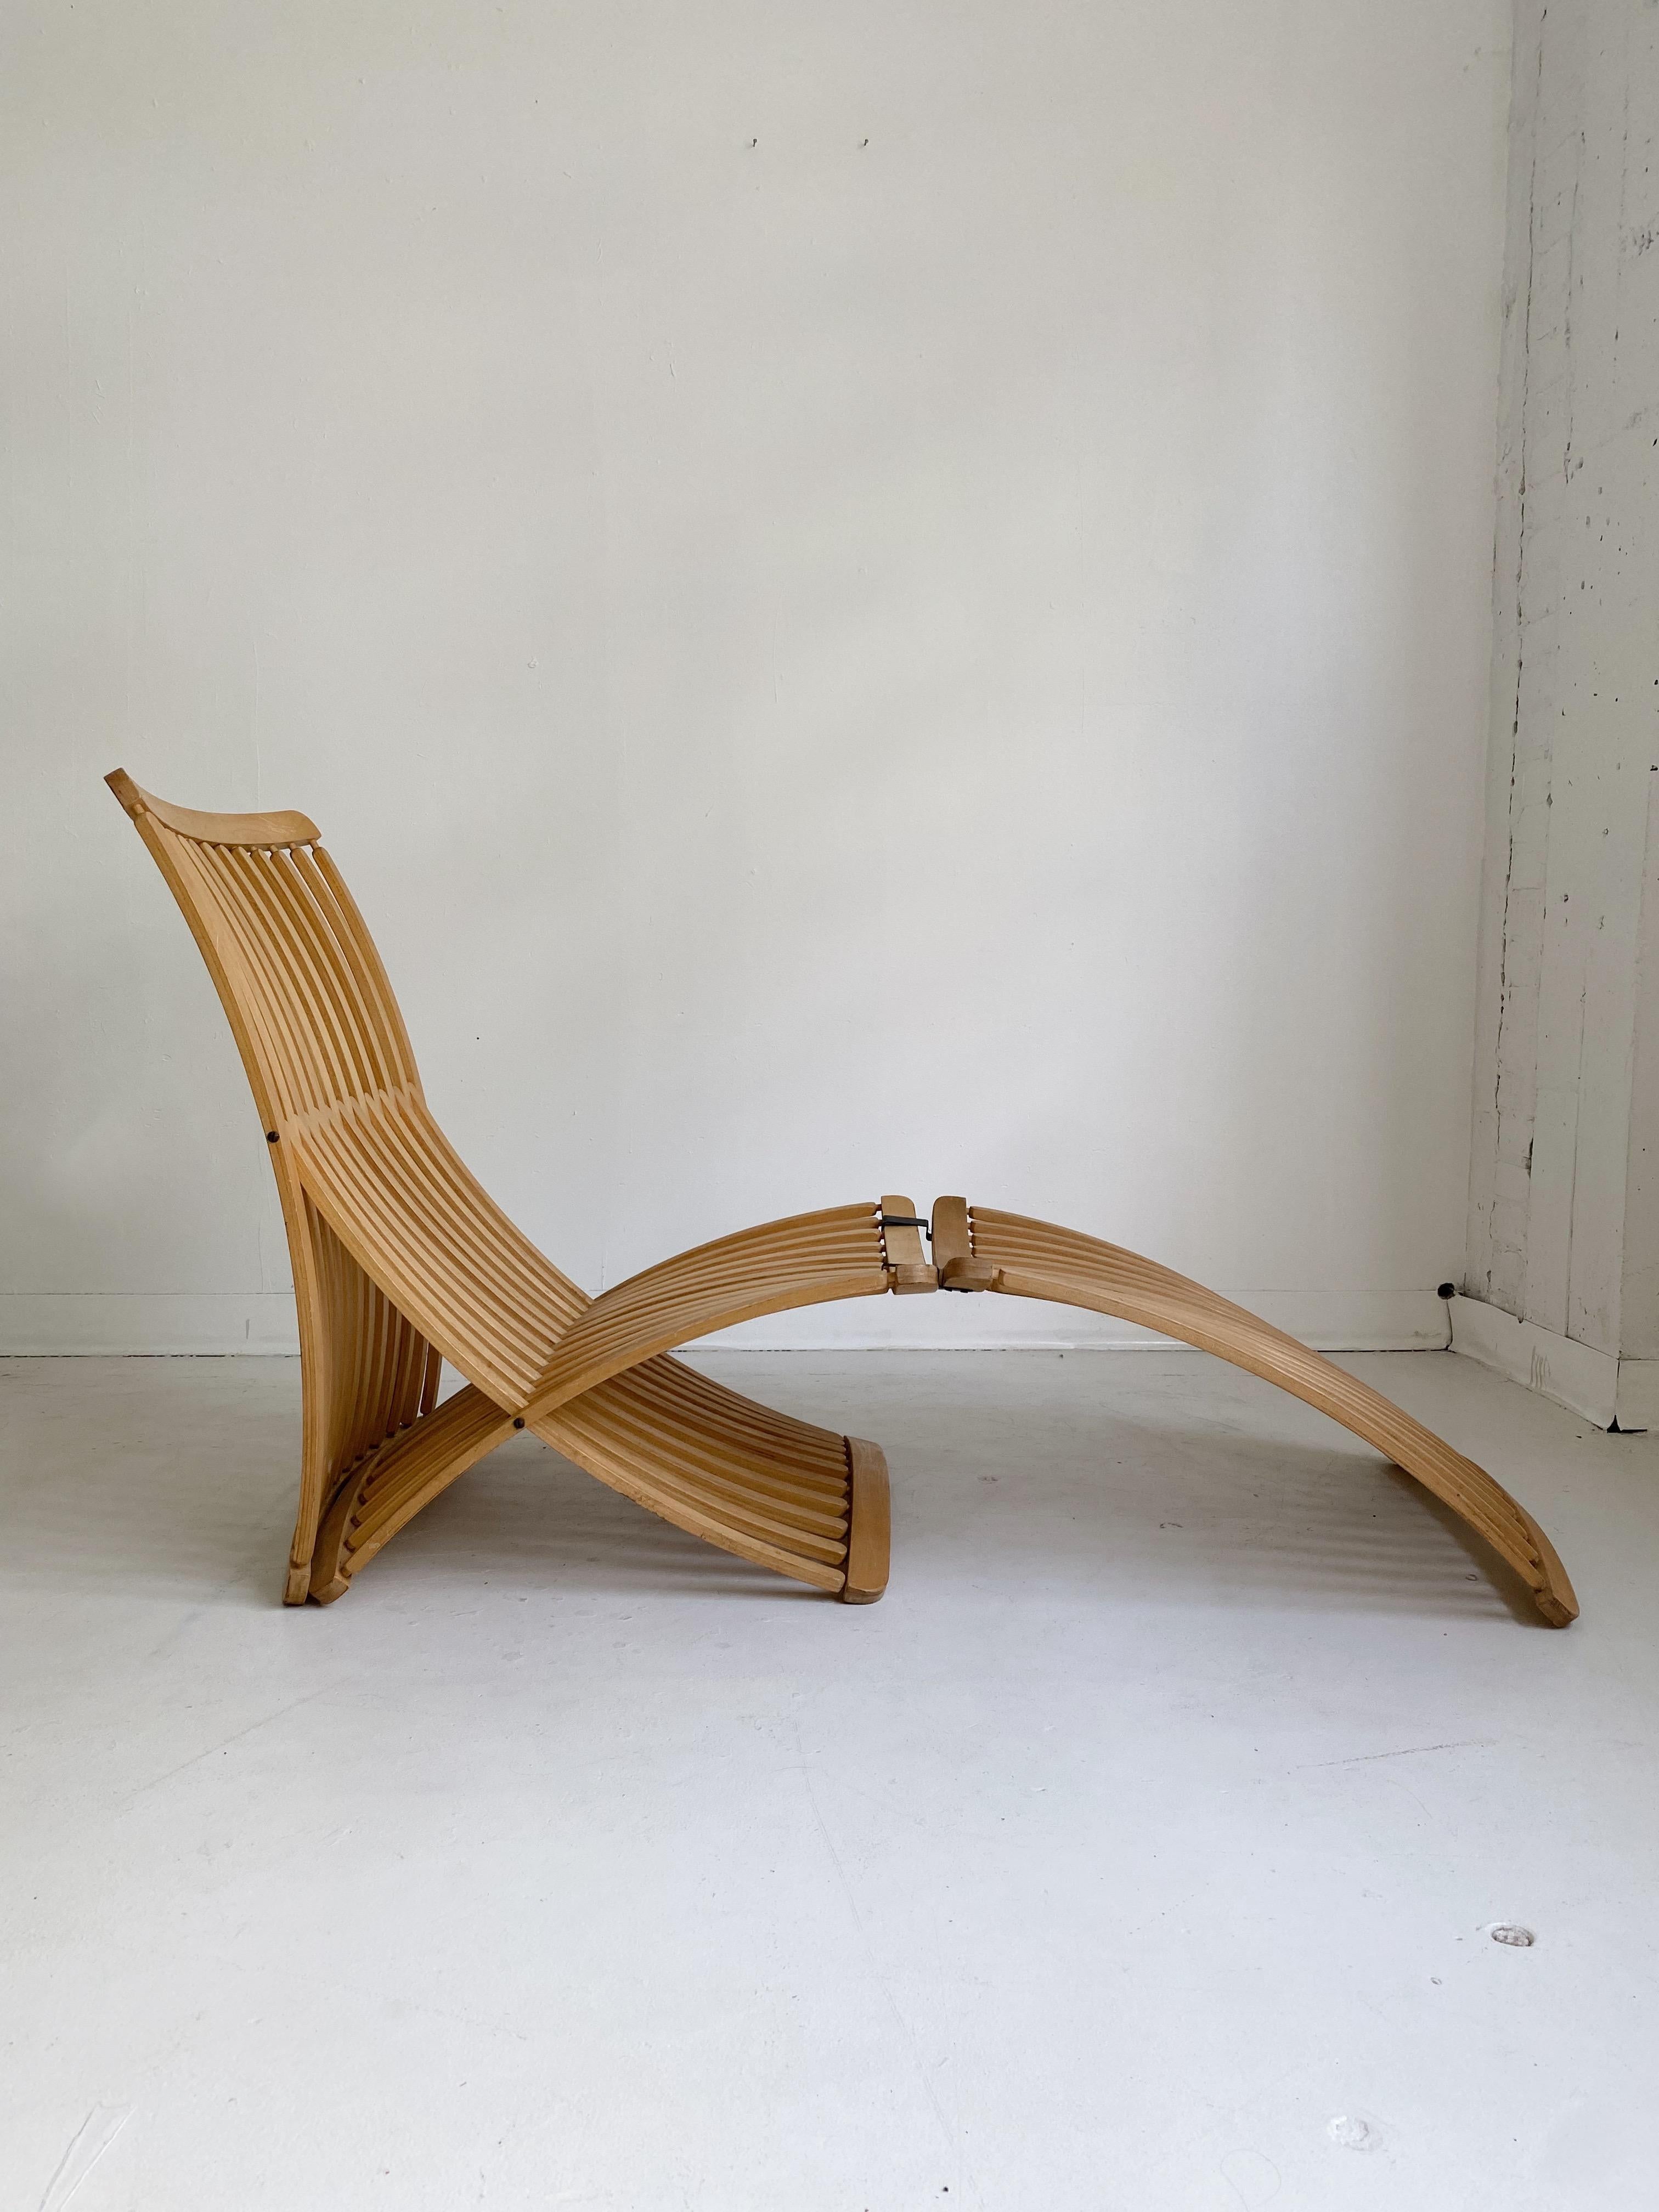 Vintage Steamer Lounge Chair von Thomas Lamb für Ambient Systems, 70er Jahre

Hergestellt aus neunlagigem kanadischem Ahornholz, mit abnehmbarem Verlängerungsfuß. Flach faltbar.

Im Jahr 1979 wurde es als erstes kanadisches Objekt in die